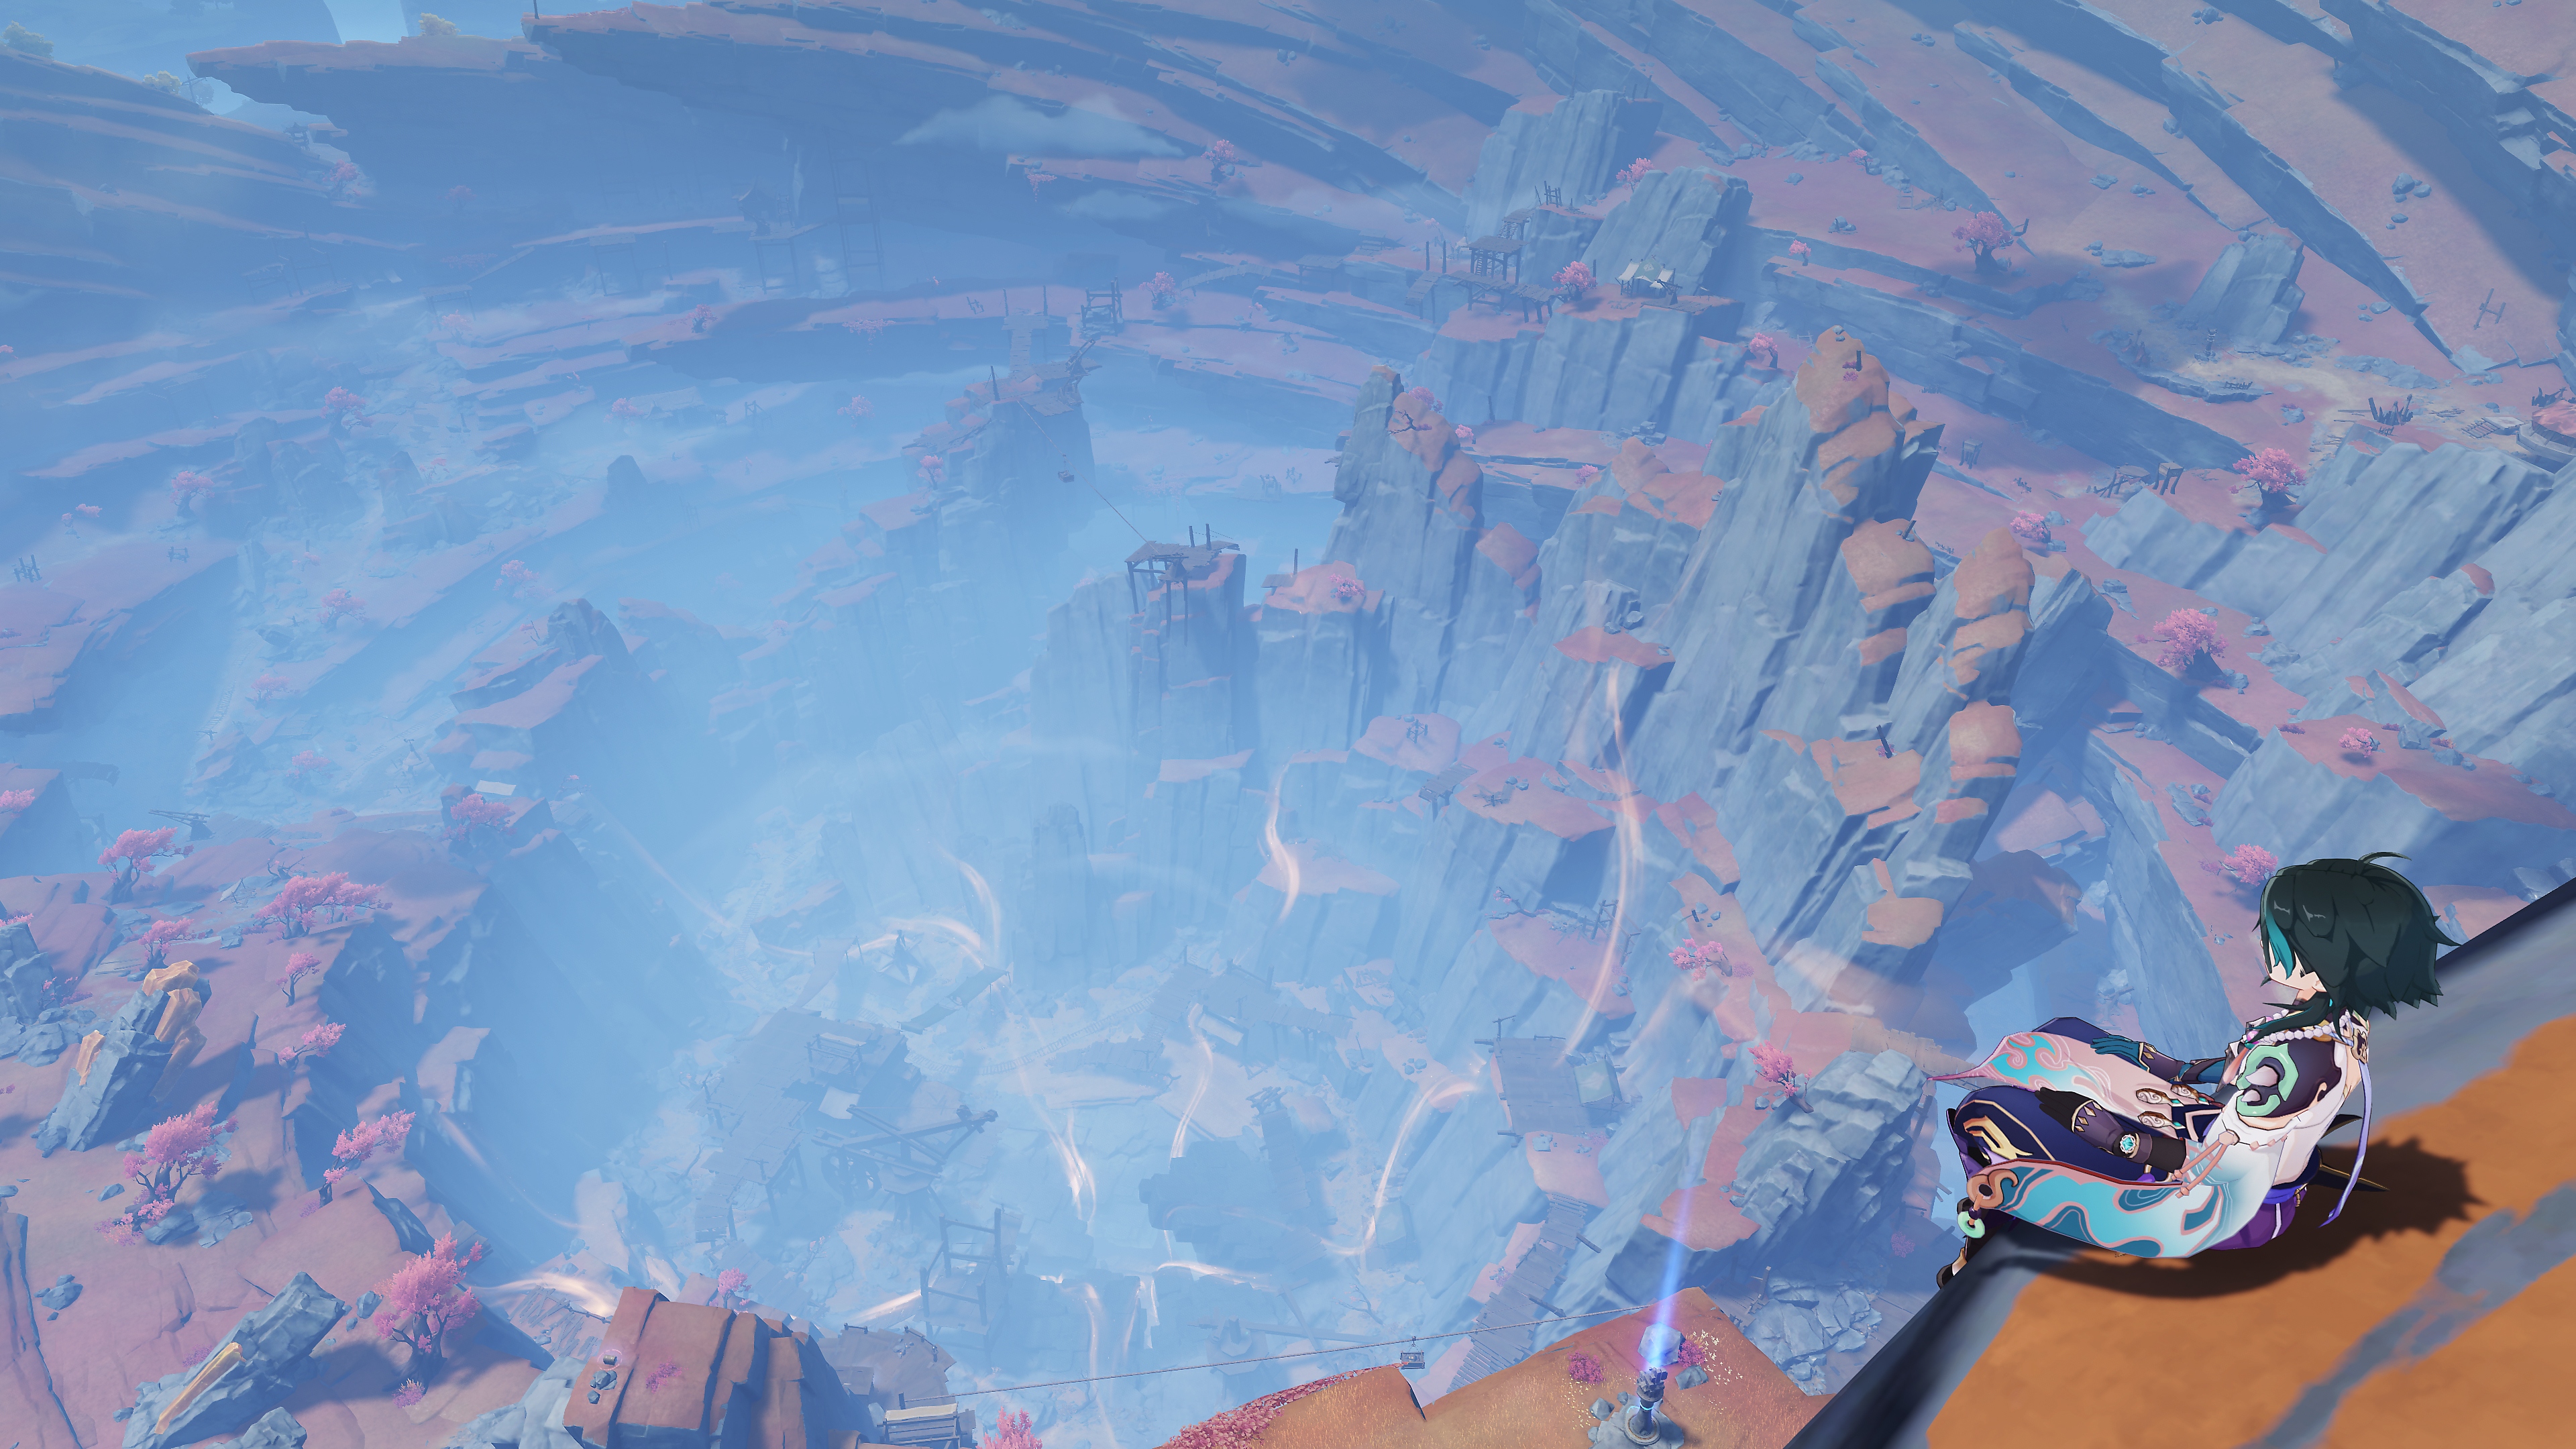 Genshin Impact: zrzut ekranu aktualizacji 2.7 przedstawiający postać siedzącą na skraju wysokiego klifu, patrzącą na krajobraz poniżej